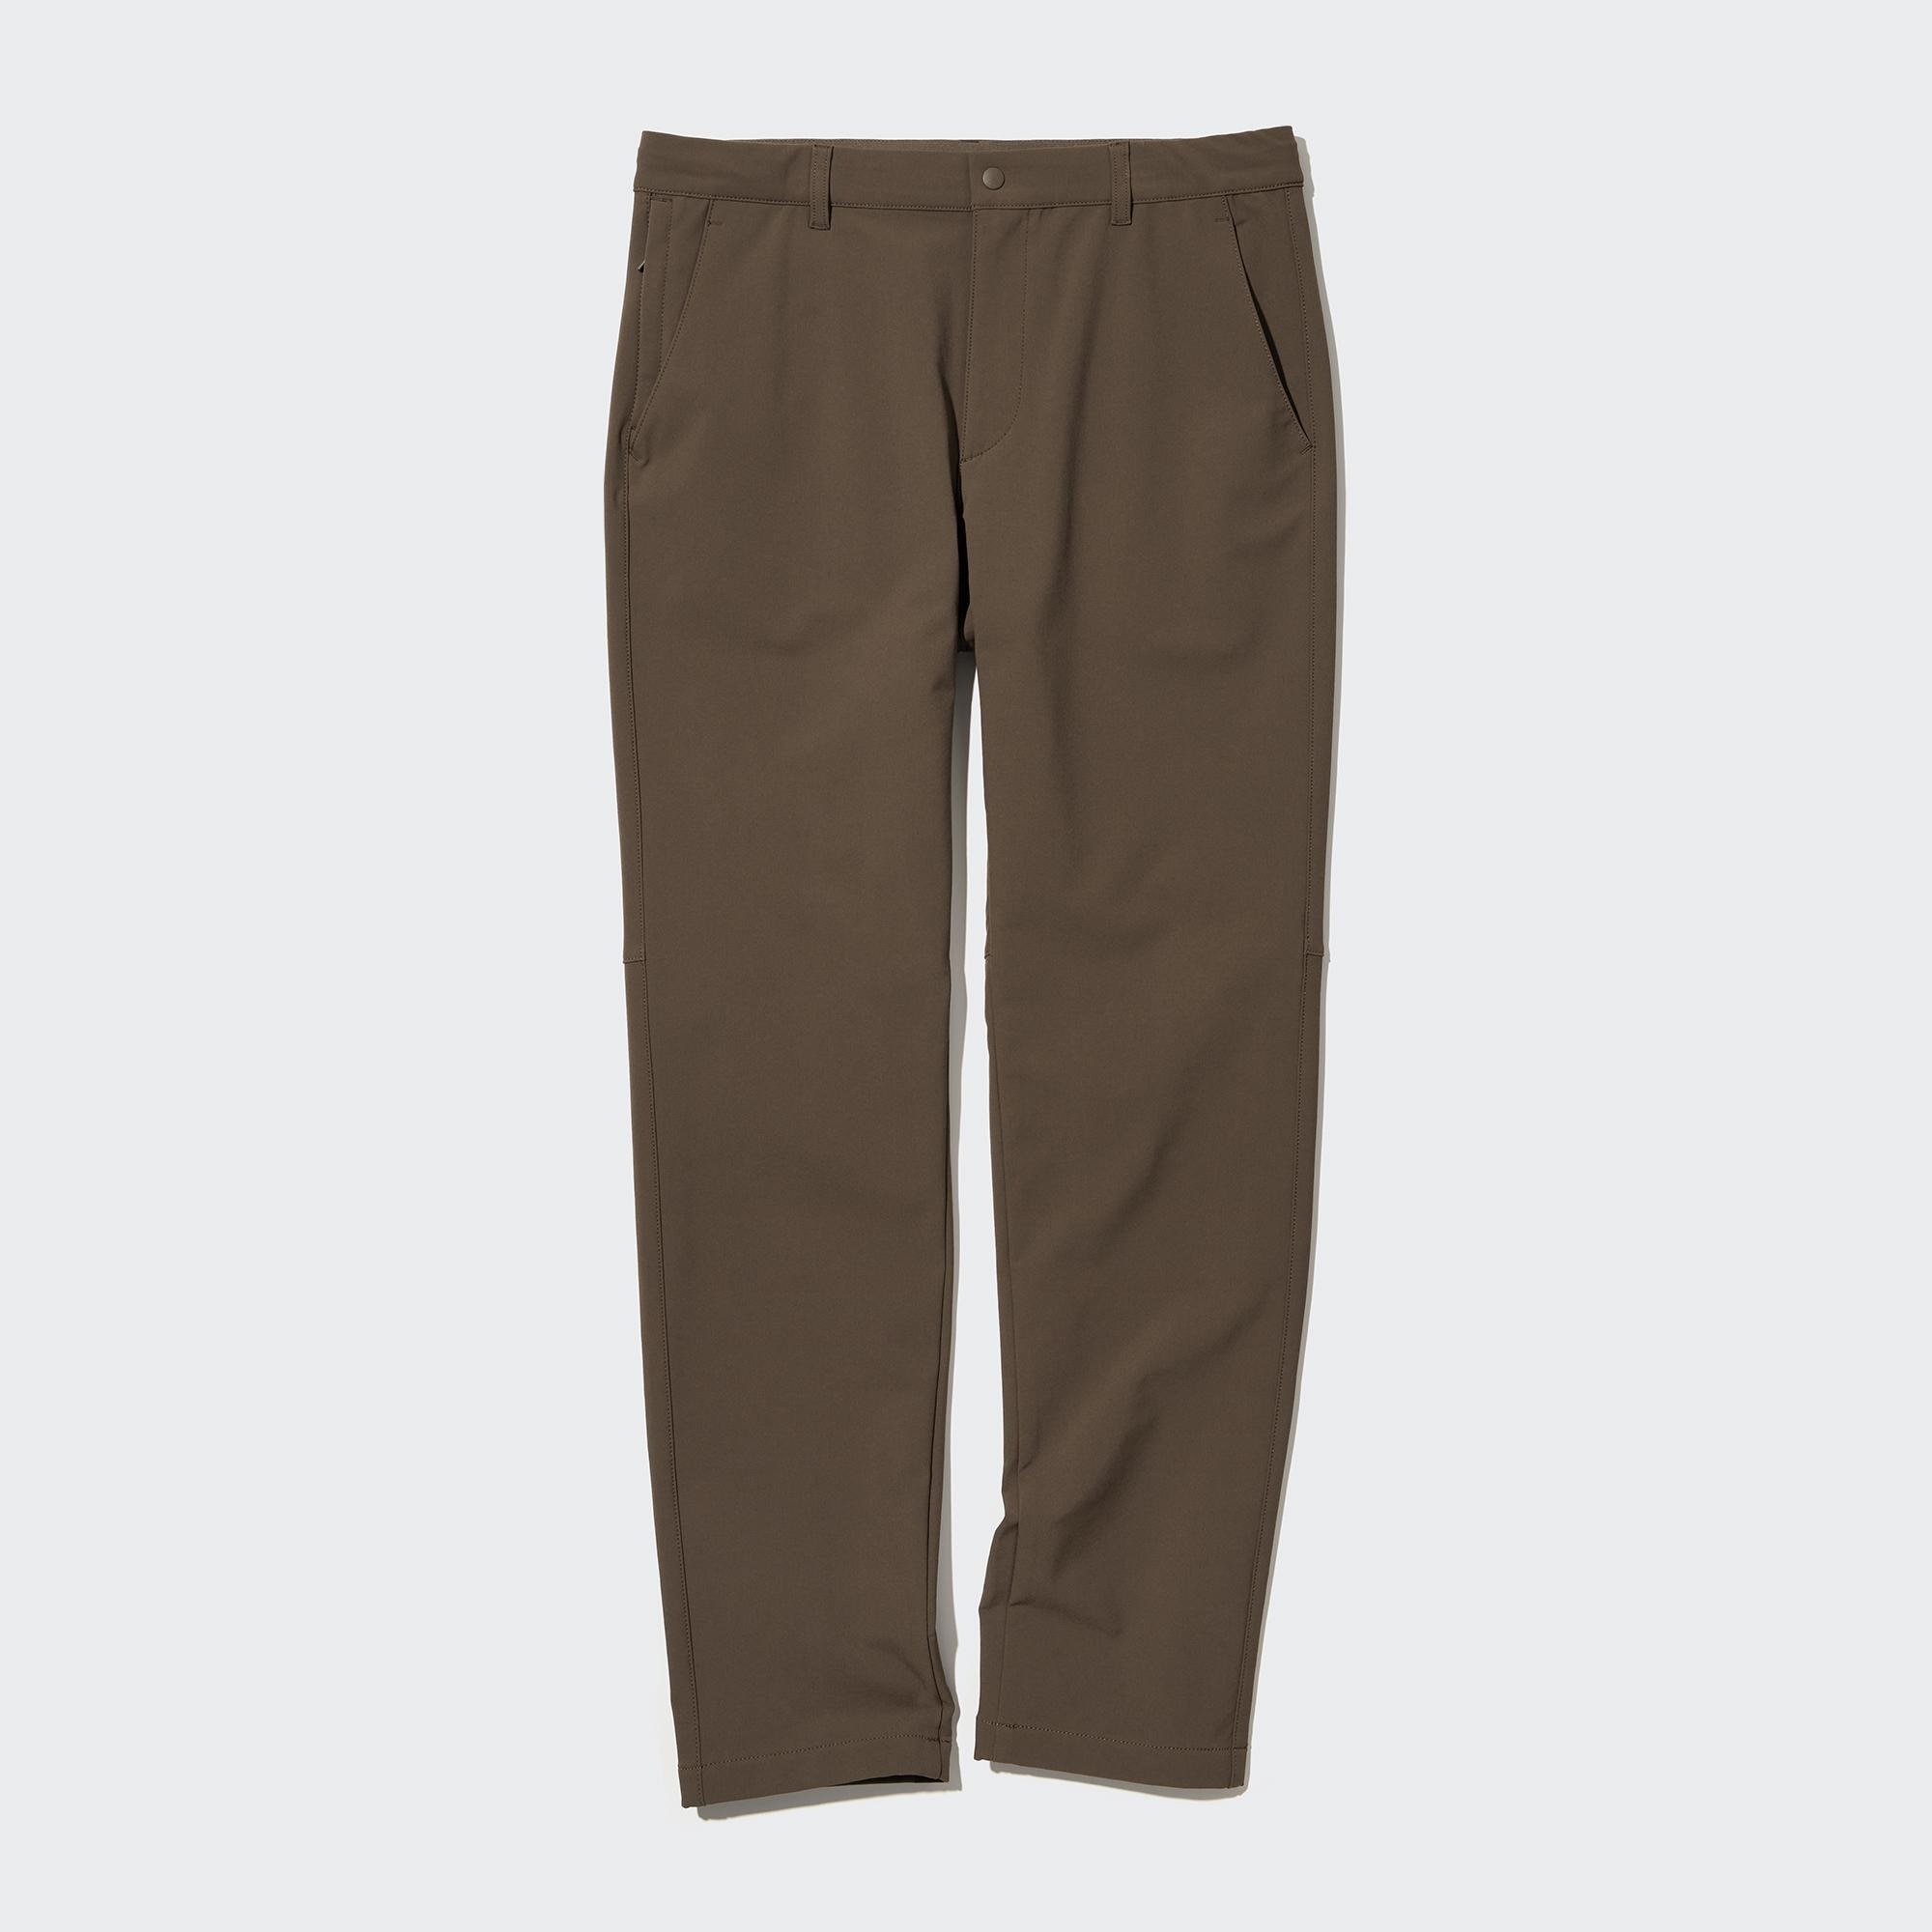 Брюки UNIQLO Heattech легкие, коричневый брюки uniqlo heattech pile lined joggers коричневый